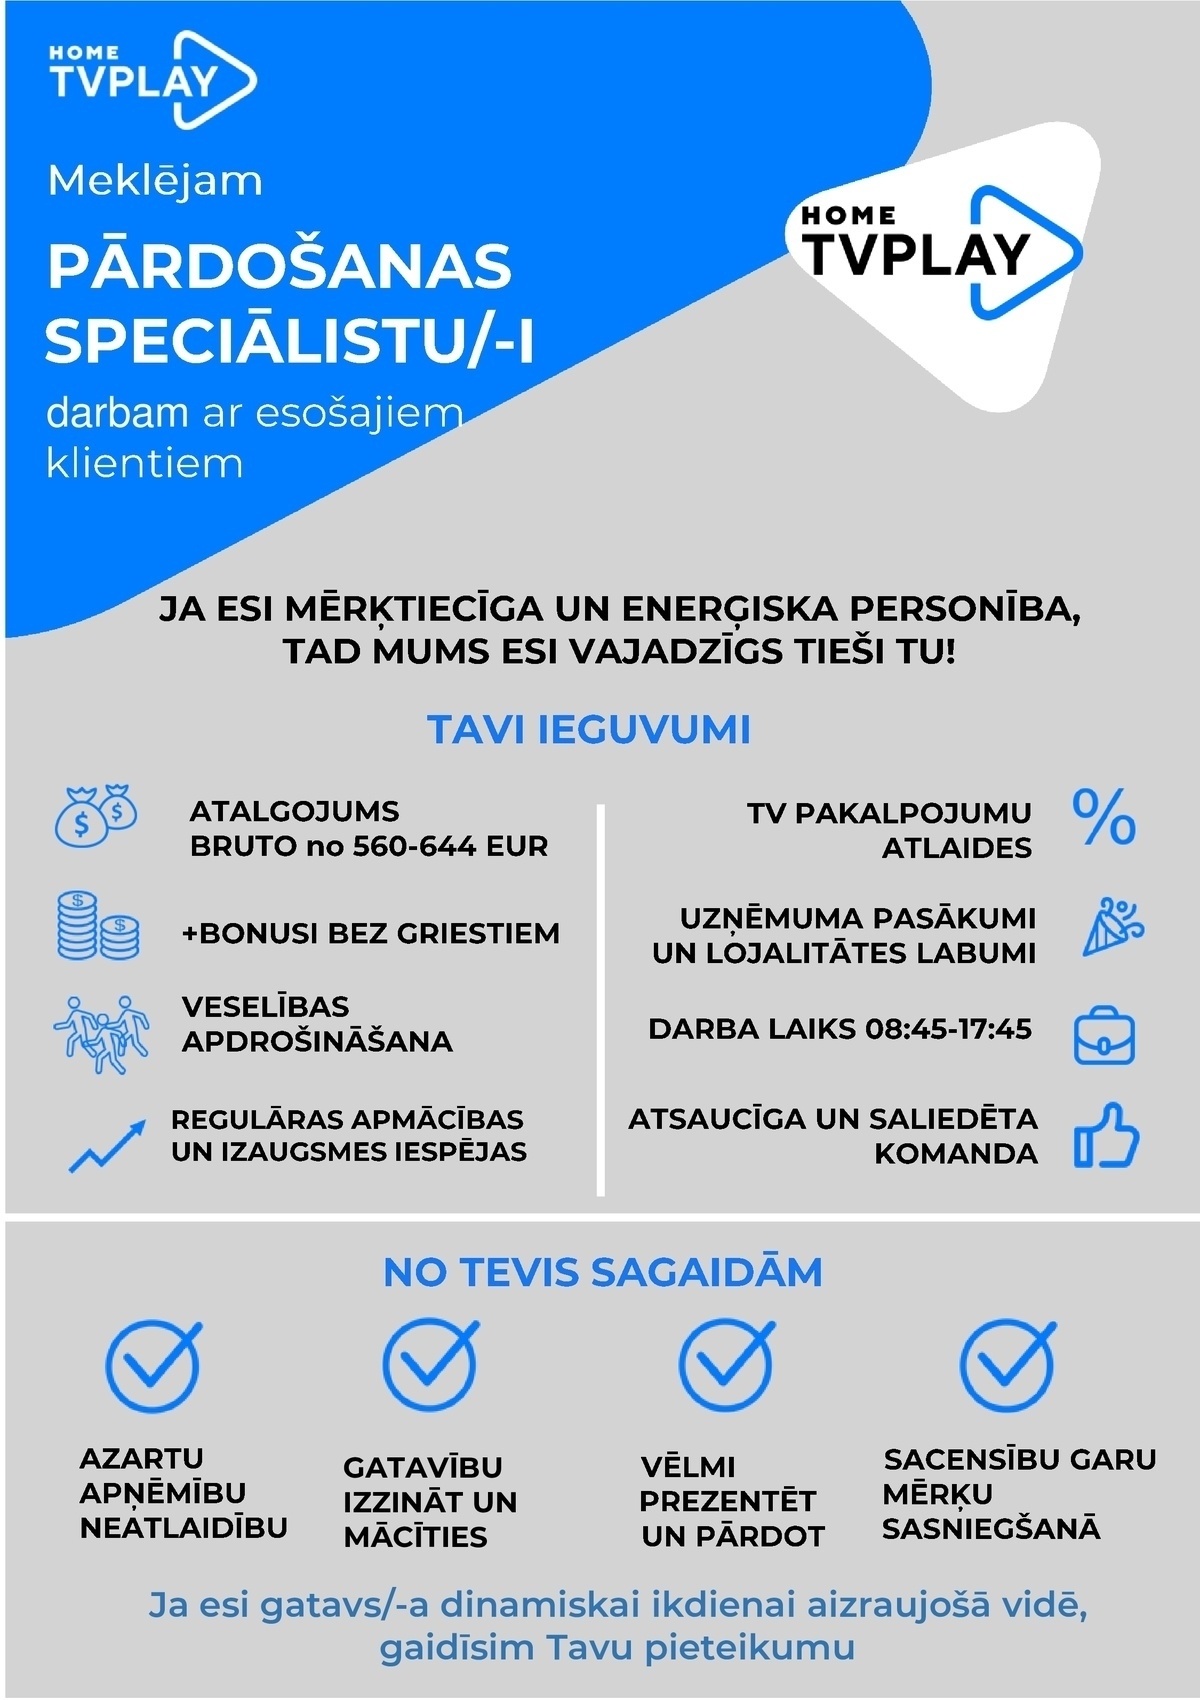 AS TV Play Baltics Latvijas filiāle Telemārketinga speciālists/-e darbam ar esošajiem klientiem